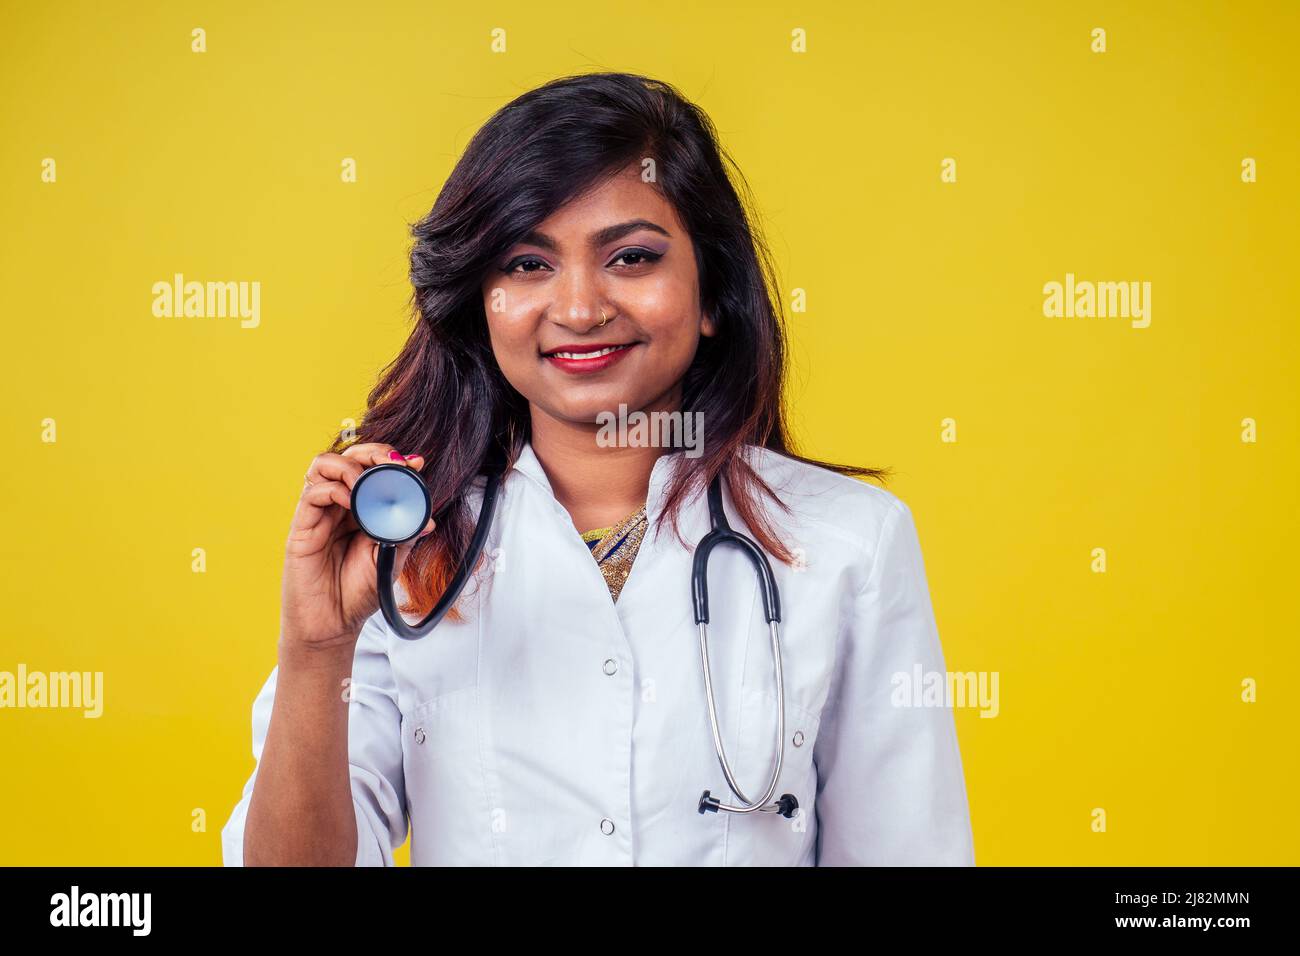 Femme indienne jeune et belle blonde femme gynécologue médecin utilisant le stéthoscope dans un manteau médical blanc sur un fond jaune dans le studio Banque D'Images